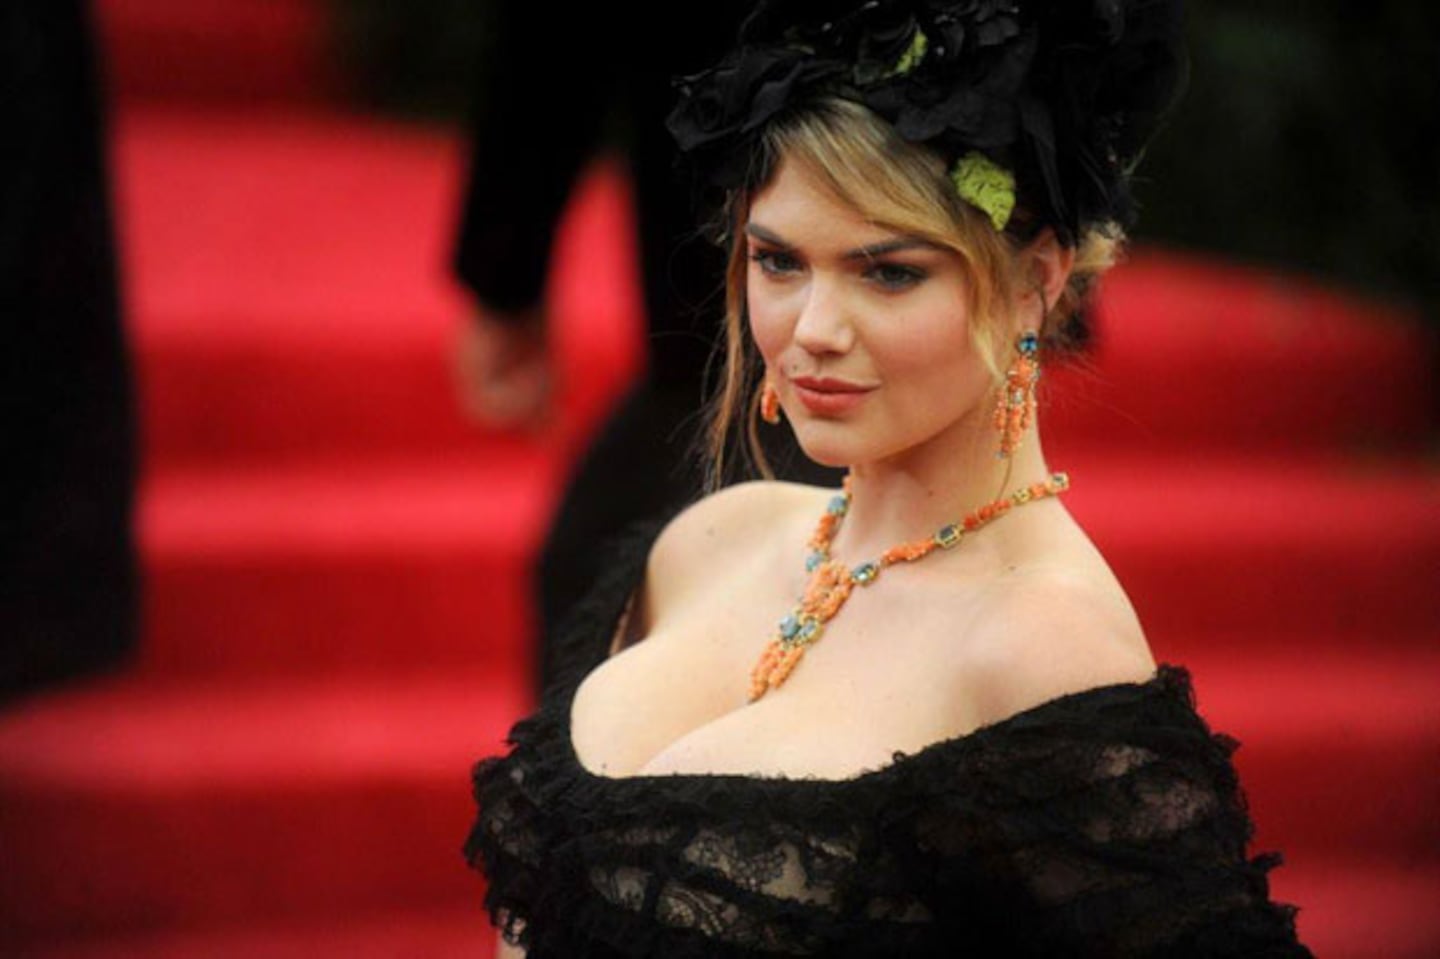 Flor compartió una imagen de Kate Upton en Cannes con un look similar (Foto: Facebook). 